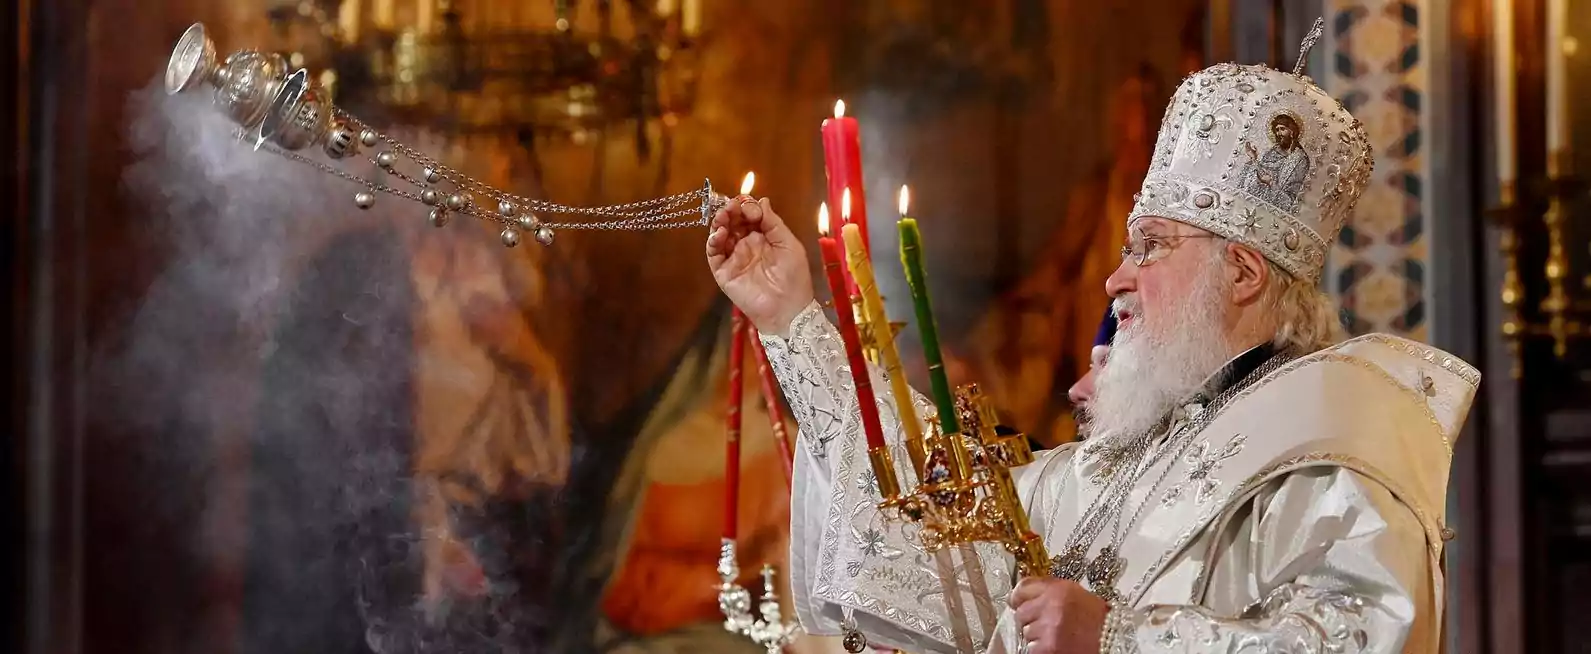 La gioia e la bellezza della Pasqua ortodossa